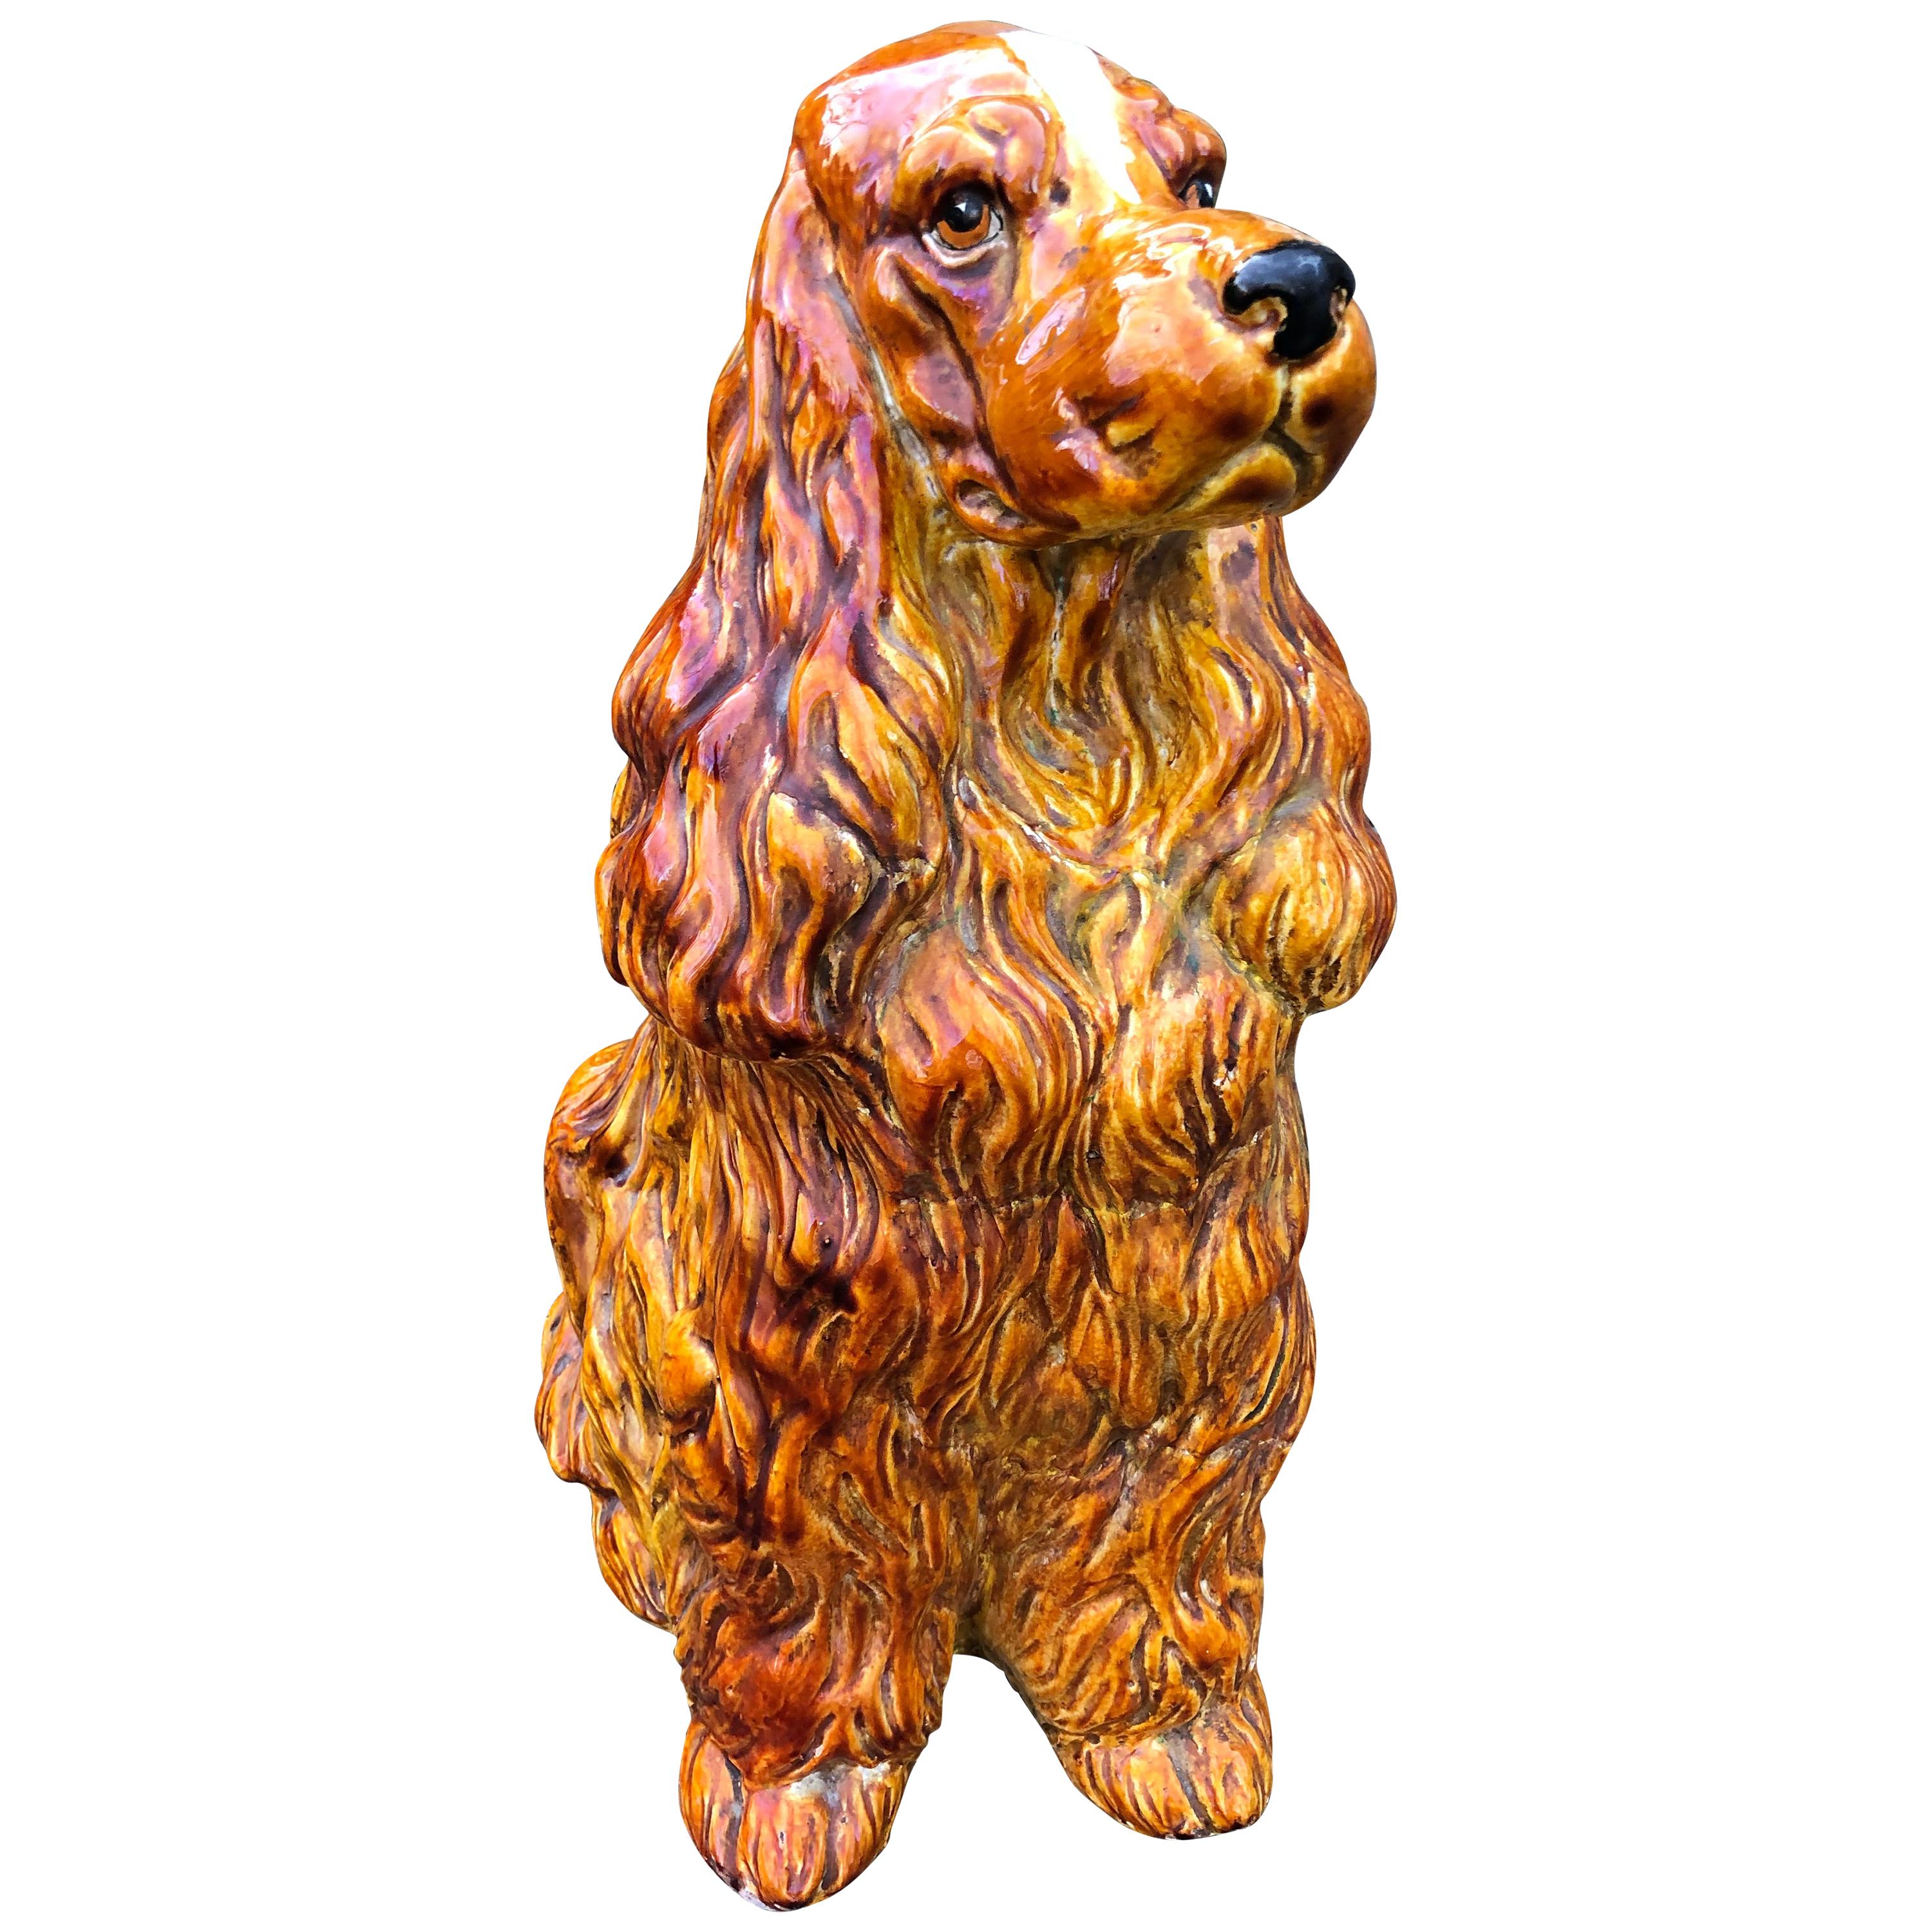 Überlebensgroße 1970er Jahre italienische Keramik Spaniel Hund Statue